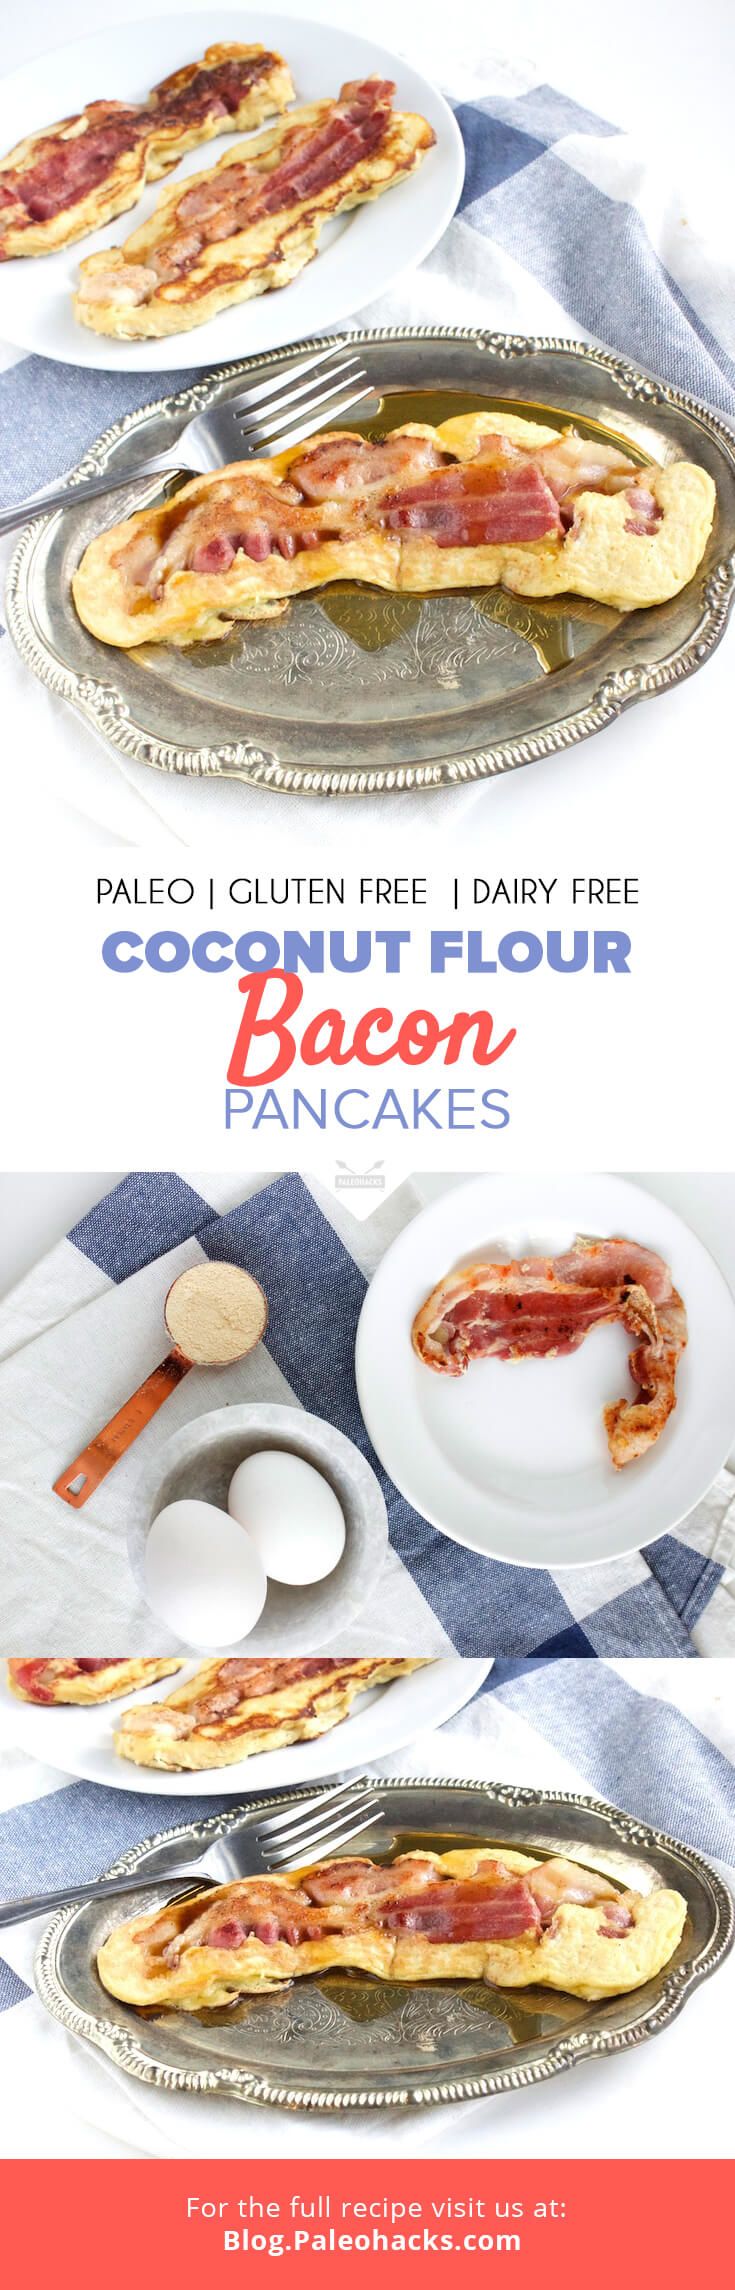 coconut flour bacon pancakes pin